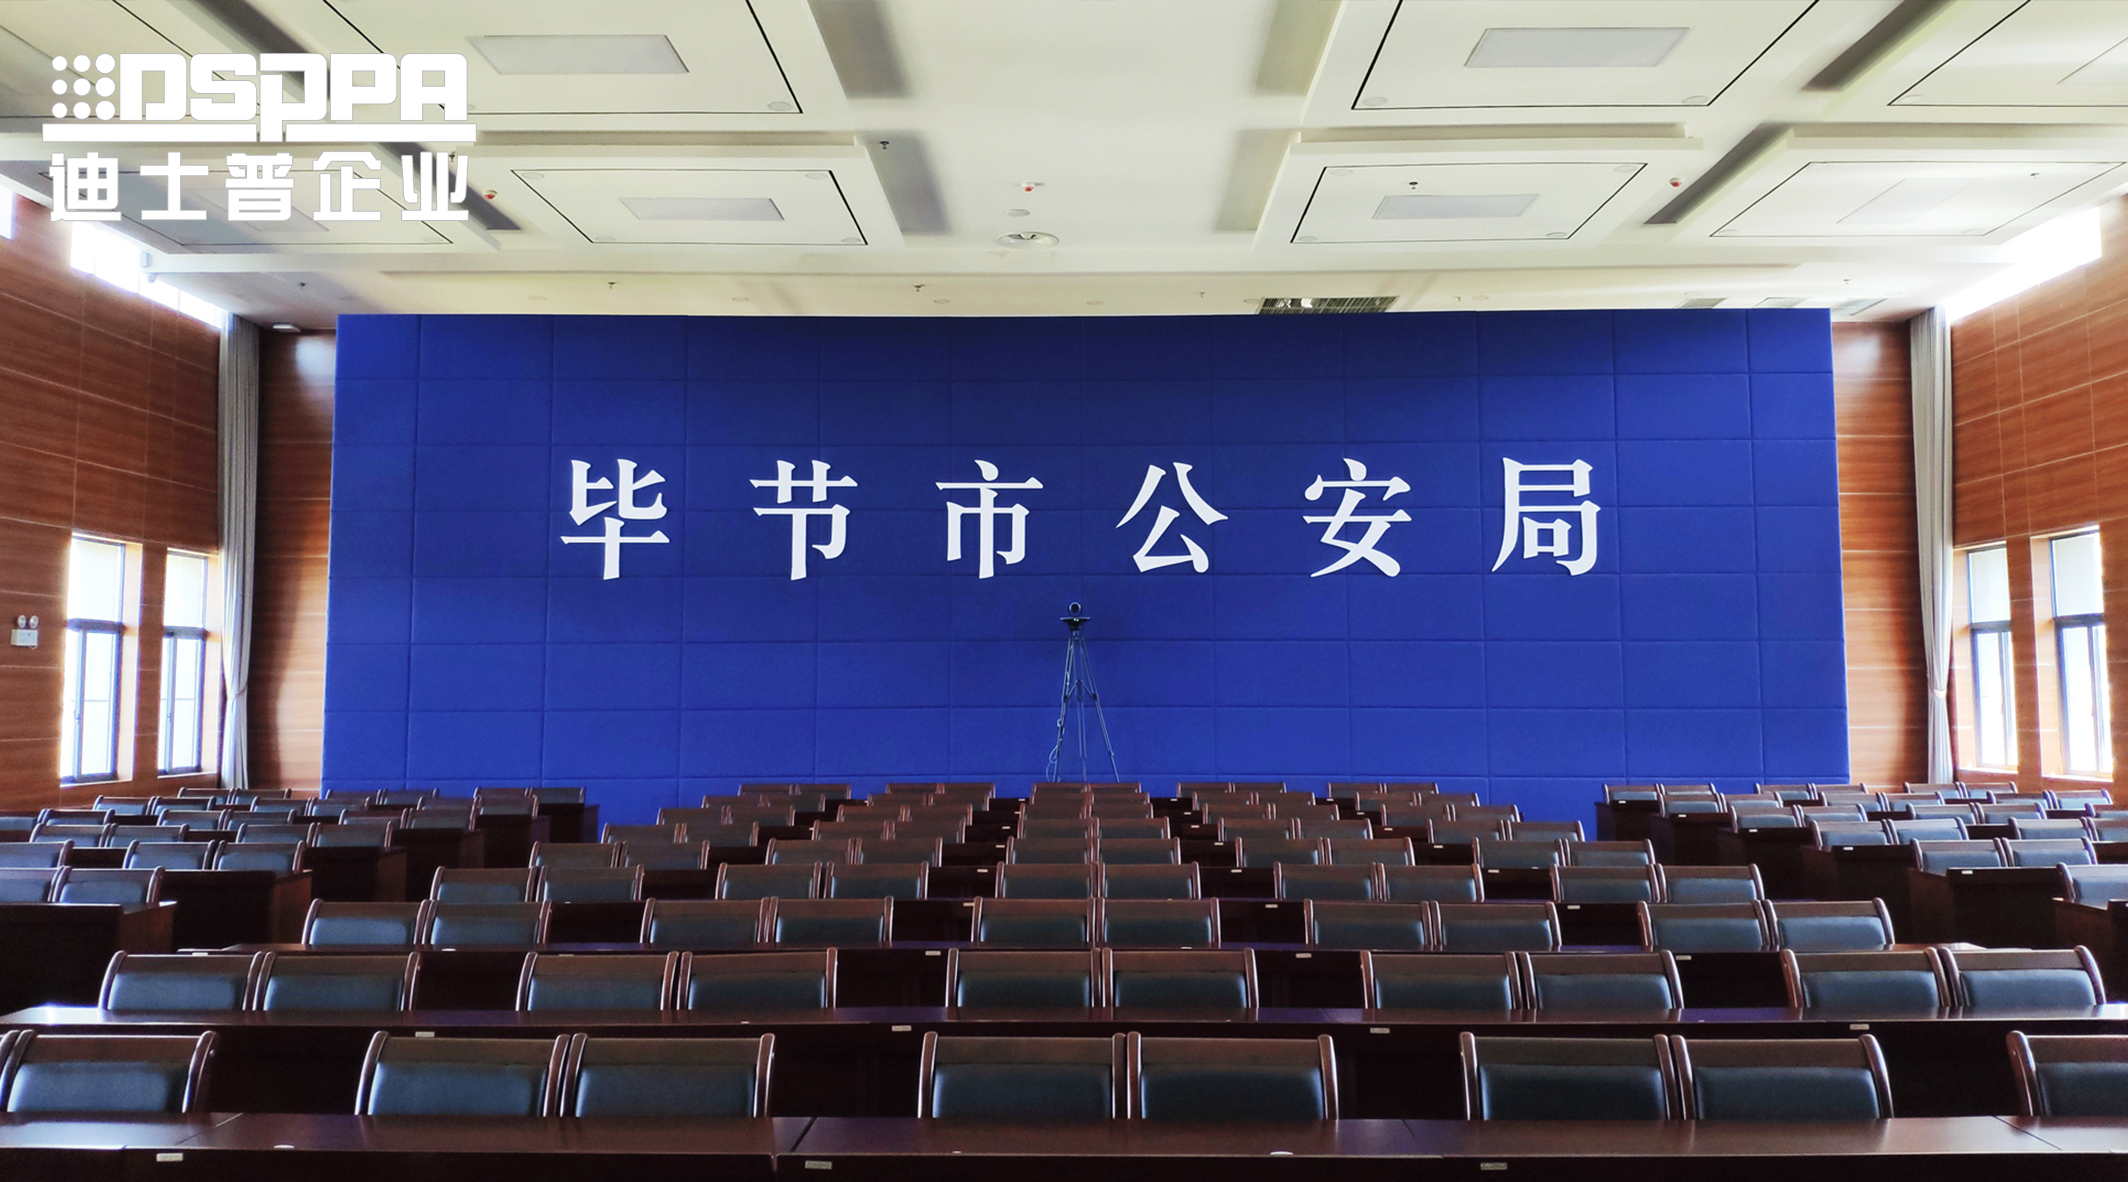 迪士普专业会议扩声系统应用于贵州省毕节市公安局报告厅